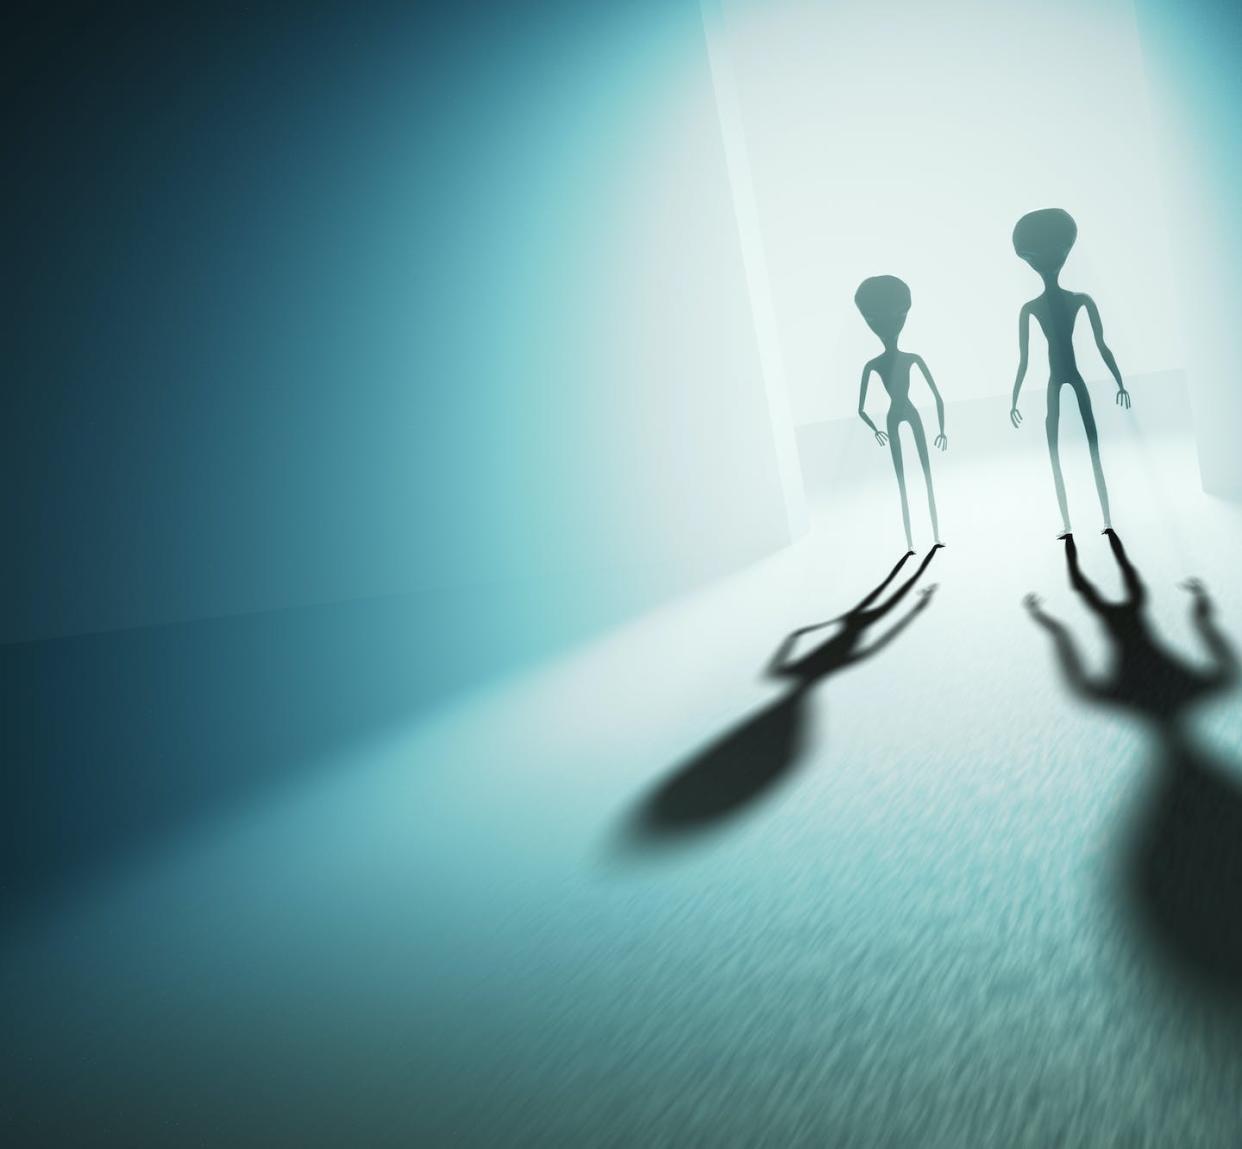 ¿Nos han visitado los extraterrestres? vchal/Shutterstock